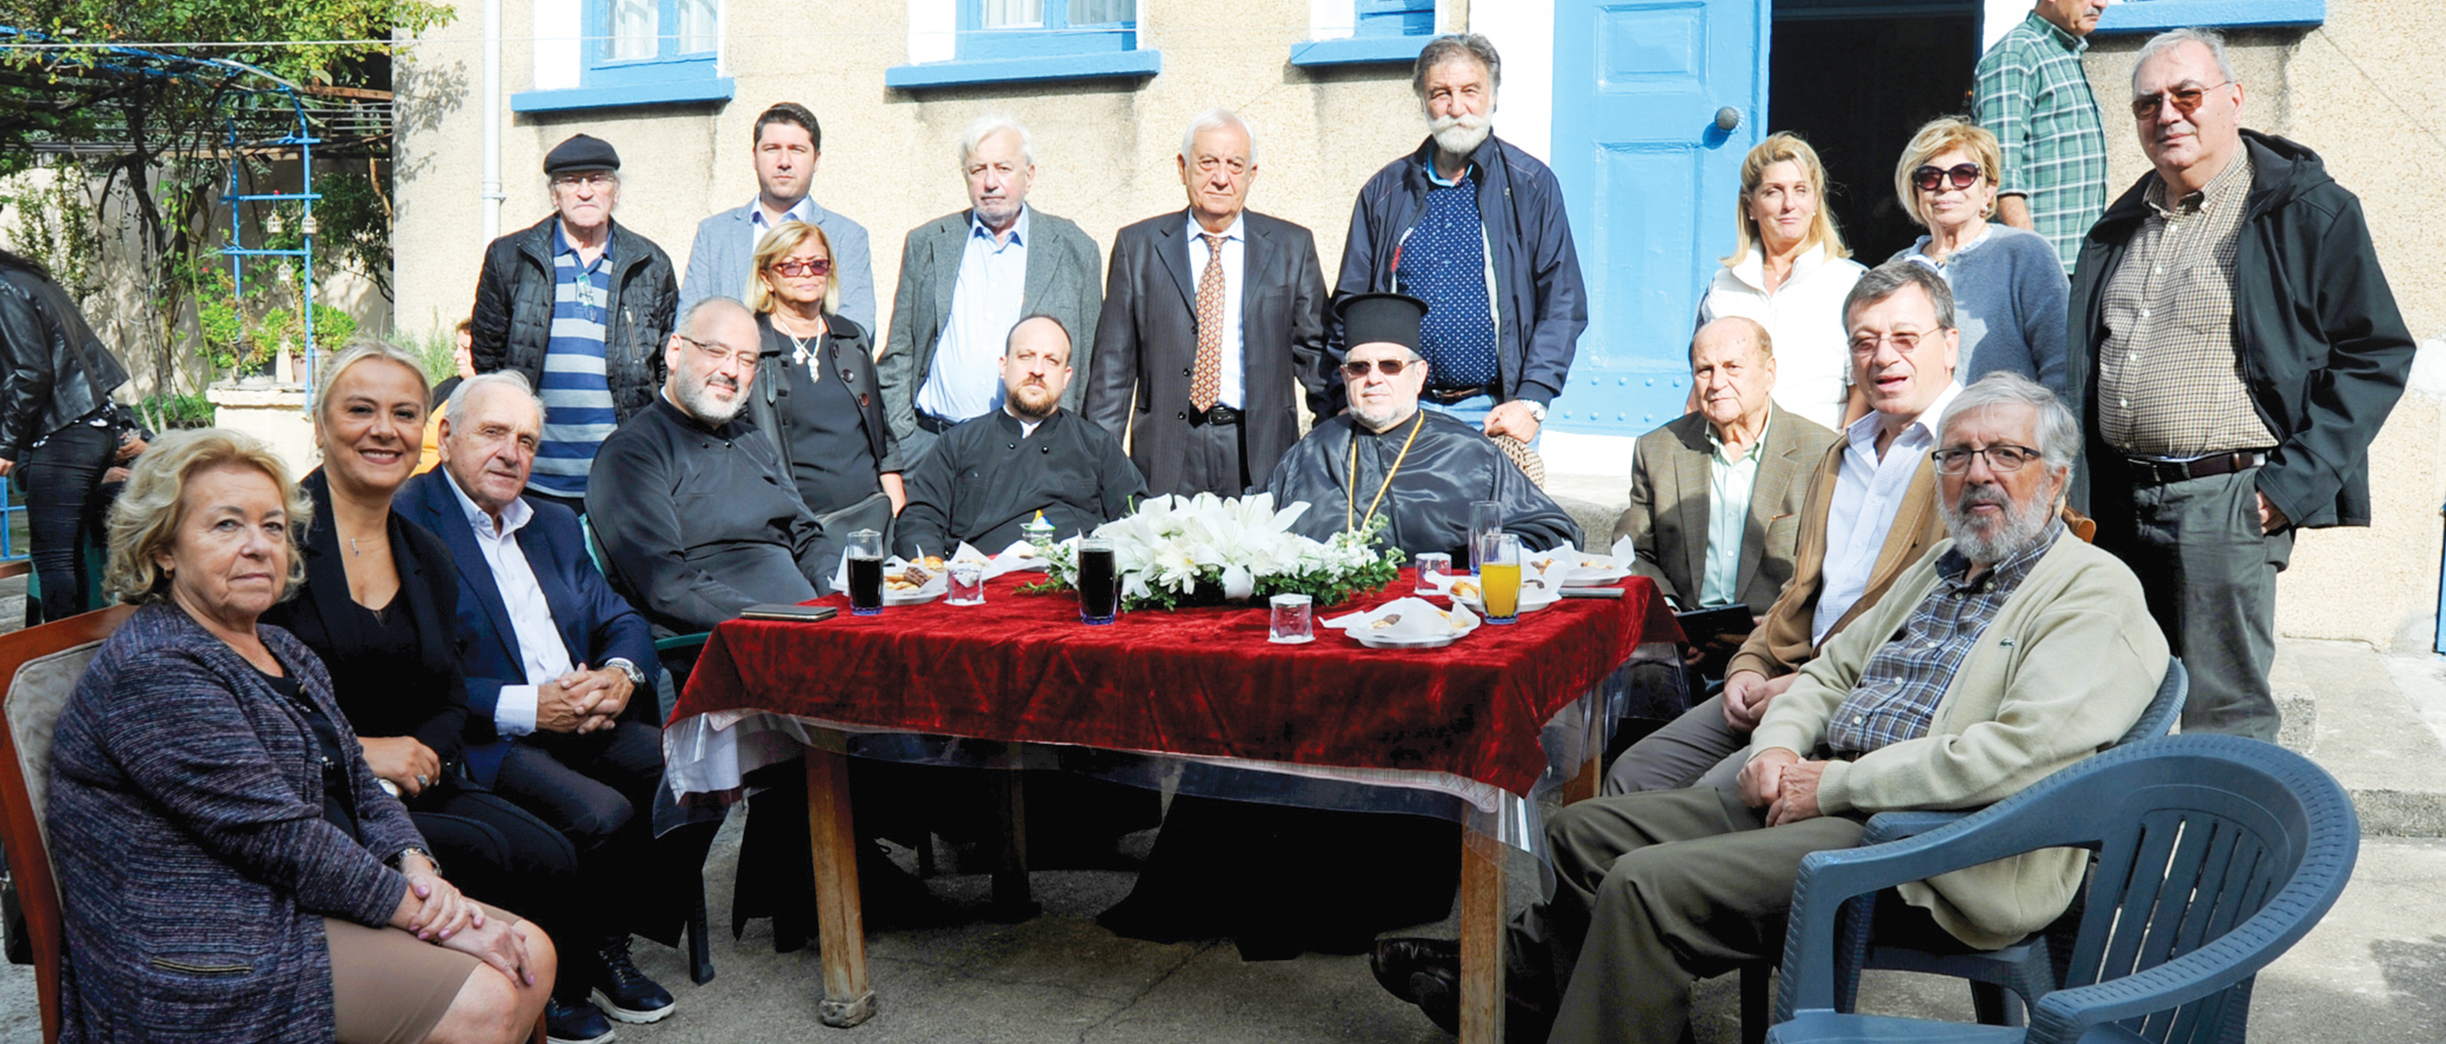 Balat Taksiarhis Kilisesi’nin isim günü kutlandı